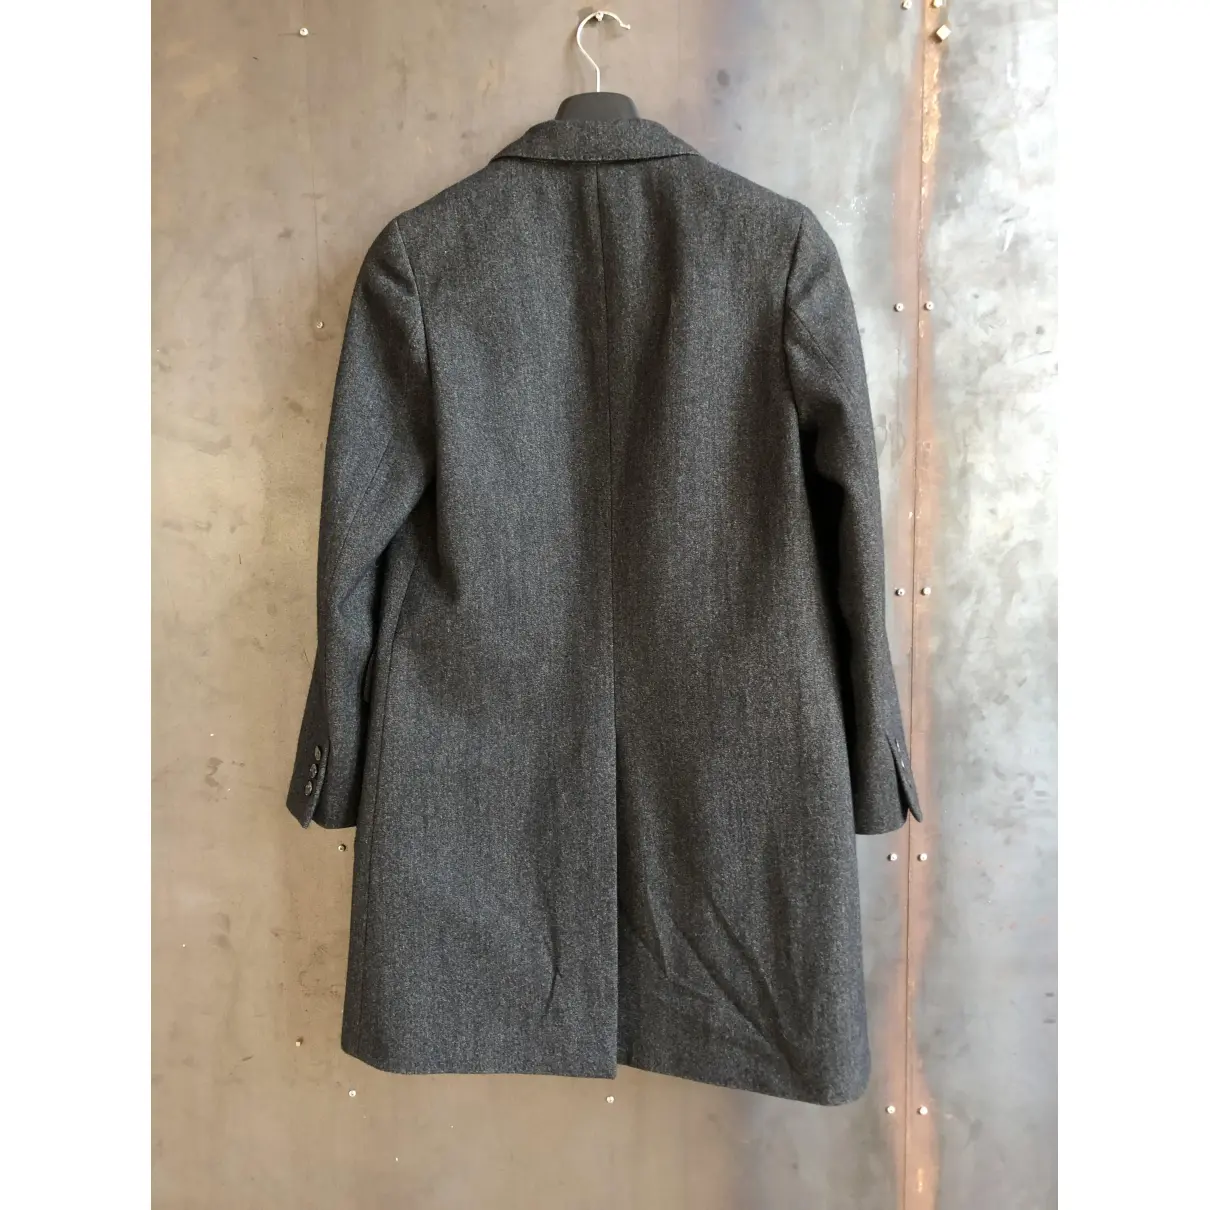 Buy Margaret Howell Wool coat online